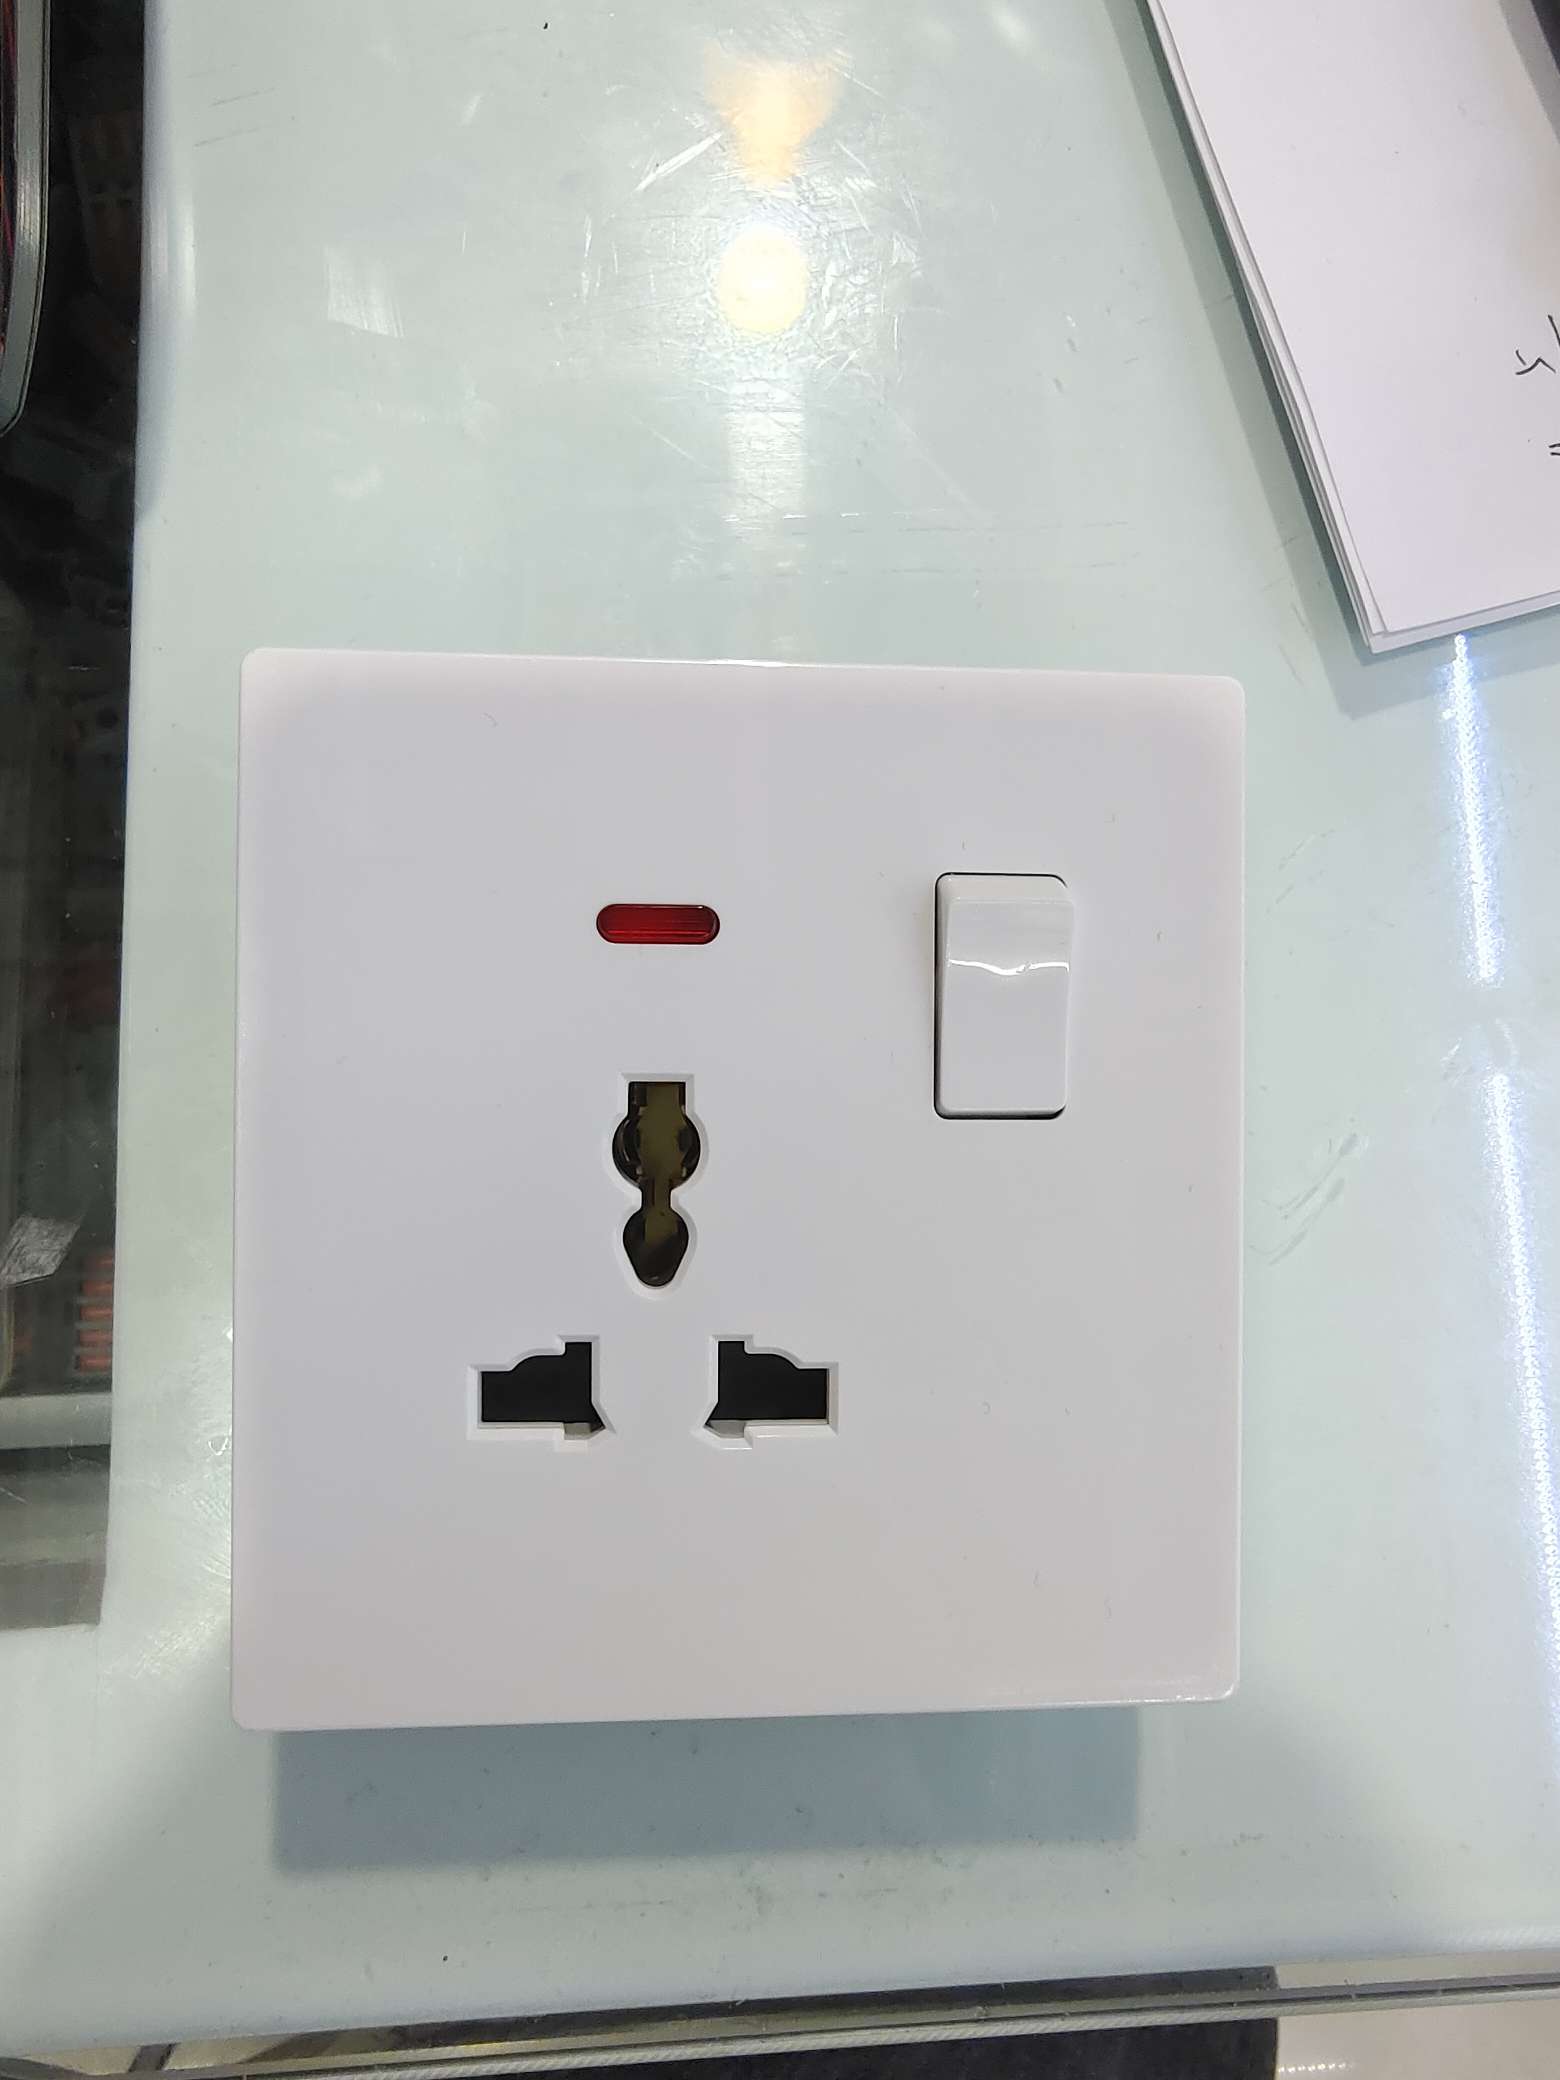 86版 13A多功能三孔插座 有按钮 带红色显示灯 墙壁开关 工厂价 质量保证 